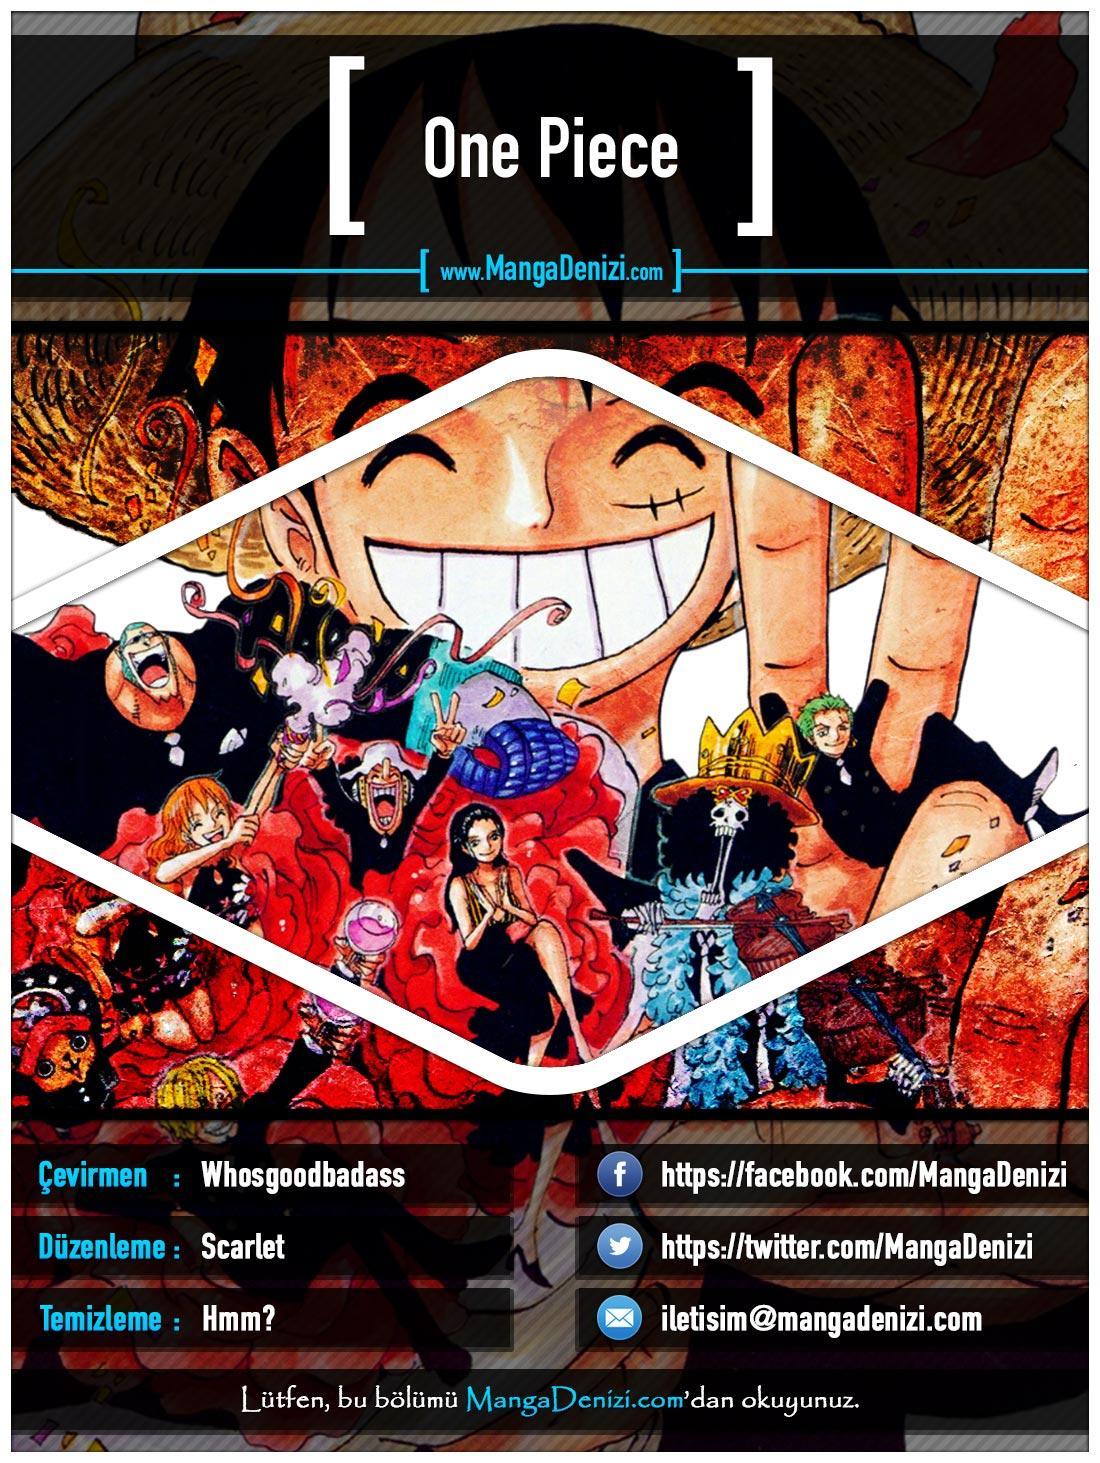 One Piece [Renkli] mangasının 0652 bölümünün 1. sayfasını okuyorsunuz.